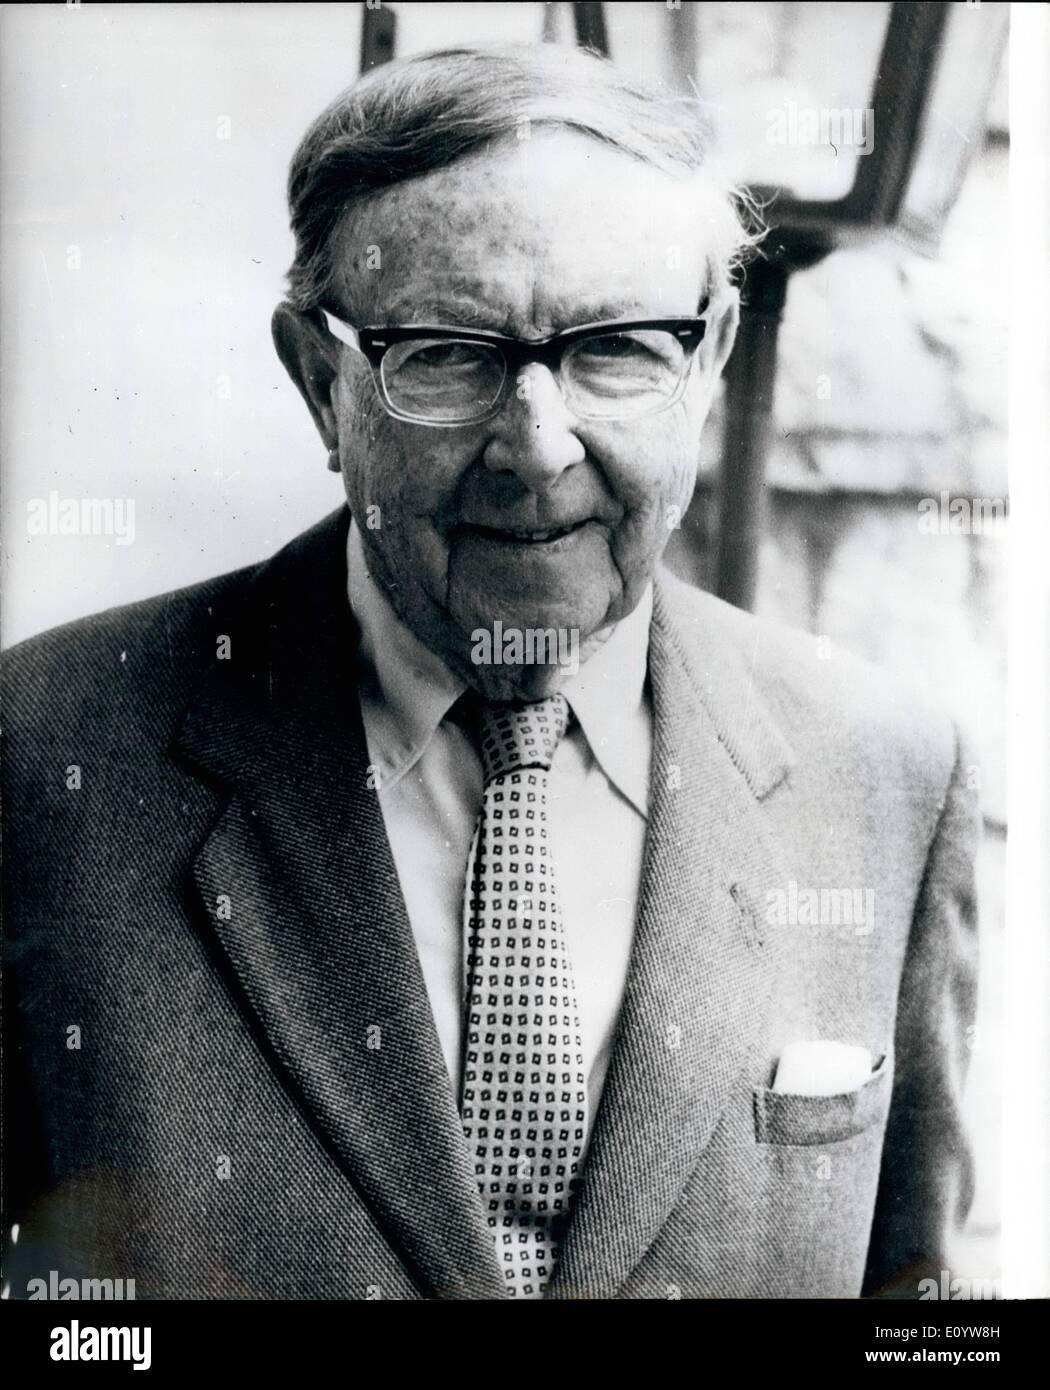 7. Juli 1971 - A.J. Cronin der 75. Geburtstag morgen.: a.j. Cronin weltbekannten britischen Schriftstellers jetzt Leben in Baugy-Sur-Clarens in der Schweiz seinen 75. Geburtstag feiert morgen (19. Juli) Cronin, studiert und Praticsed Medizin bis 1936, als er dies aufgegeben widmete sich dem schreiben. Eines dieser bekanntesten Romane geschrieben während der dreißiger Jahre war die Zitadelle. Foto zeigt a.j. Cronin, die 75 Jahre alte Morgen in seinem Haus in der Schweiz gesehen. Stockfoto